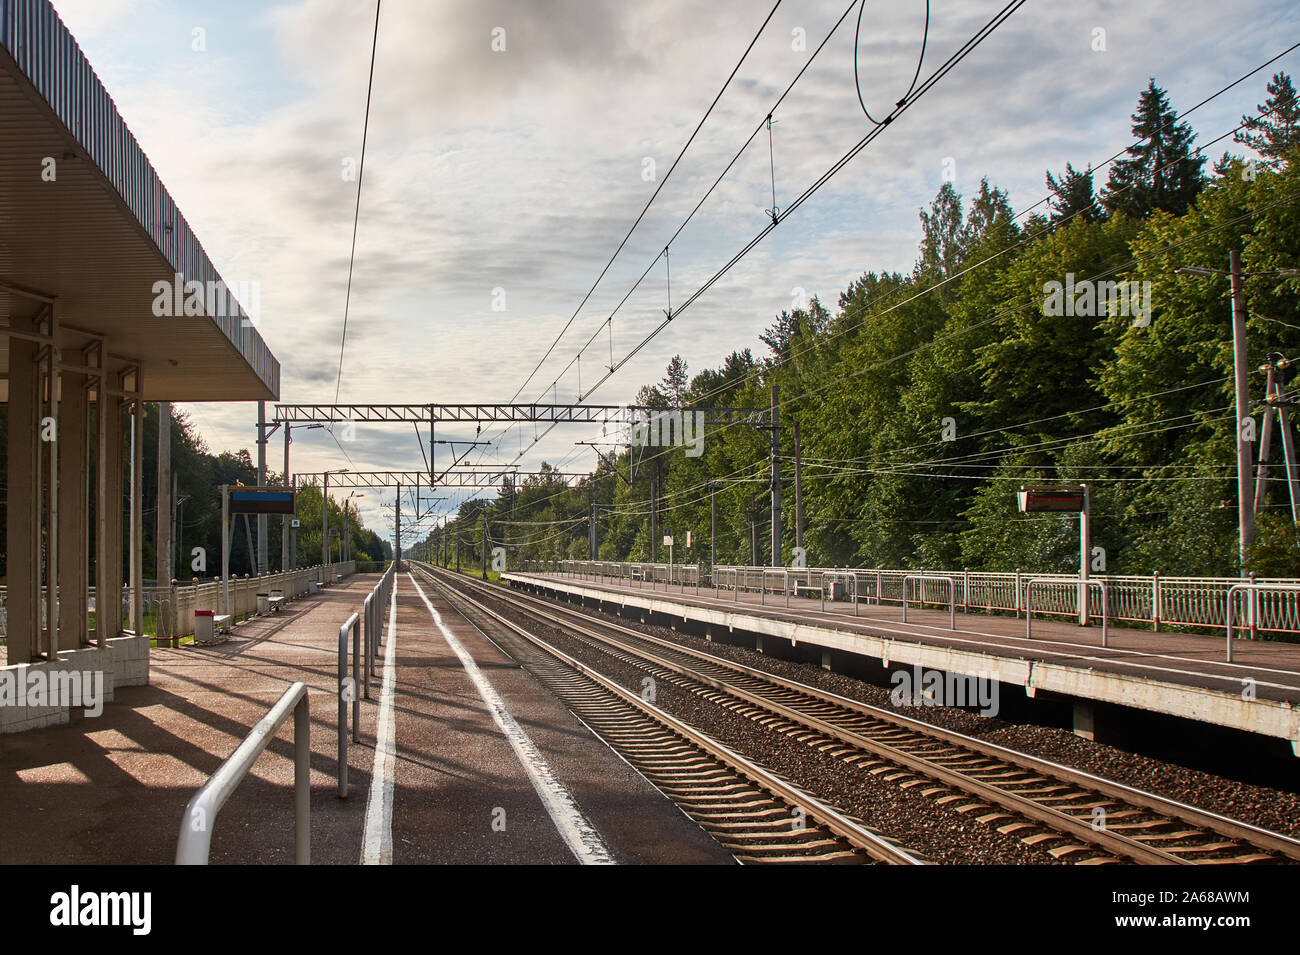 Blick auf die S-Bahn mit Schienen und Plattformen in zwei Richtungen. Wald im Hintergrund Stockfoto